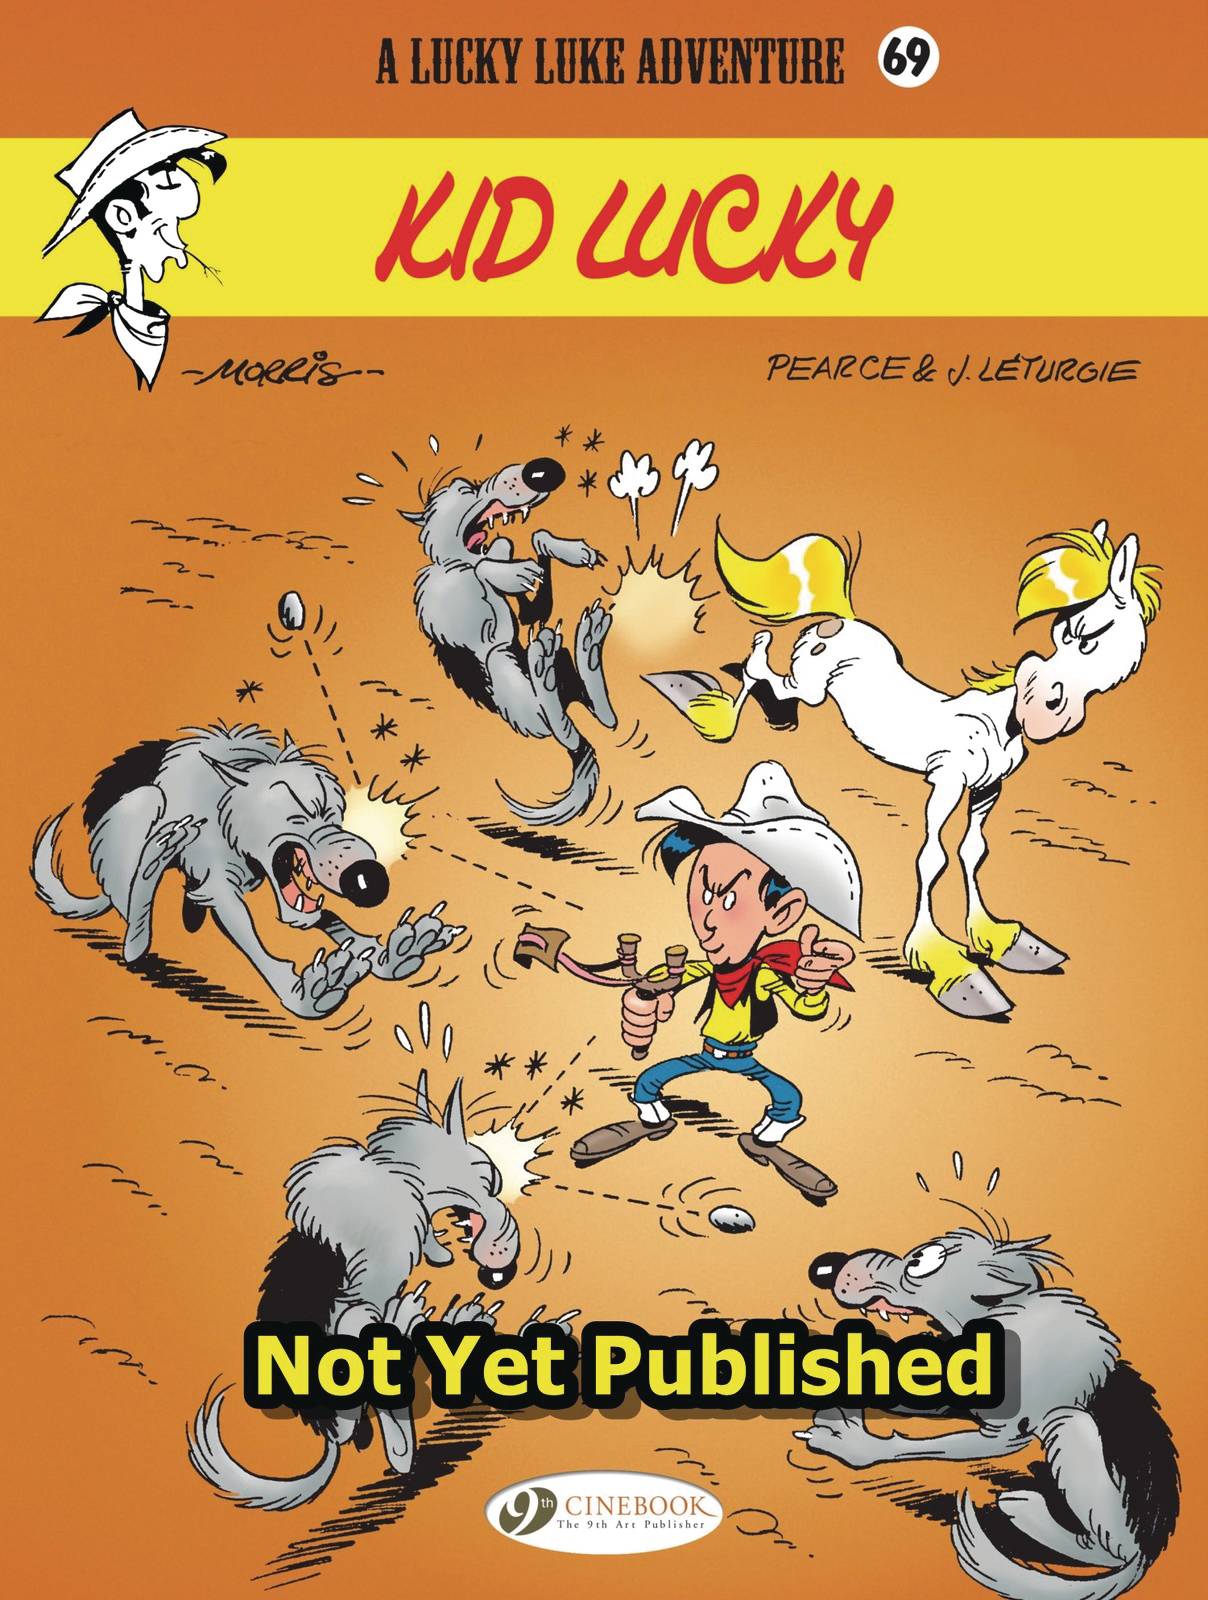 Lucky Luke Graphic Novel Volume 69 Kid Lucky